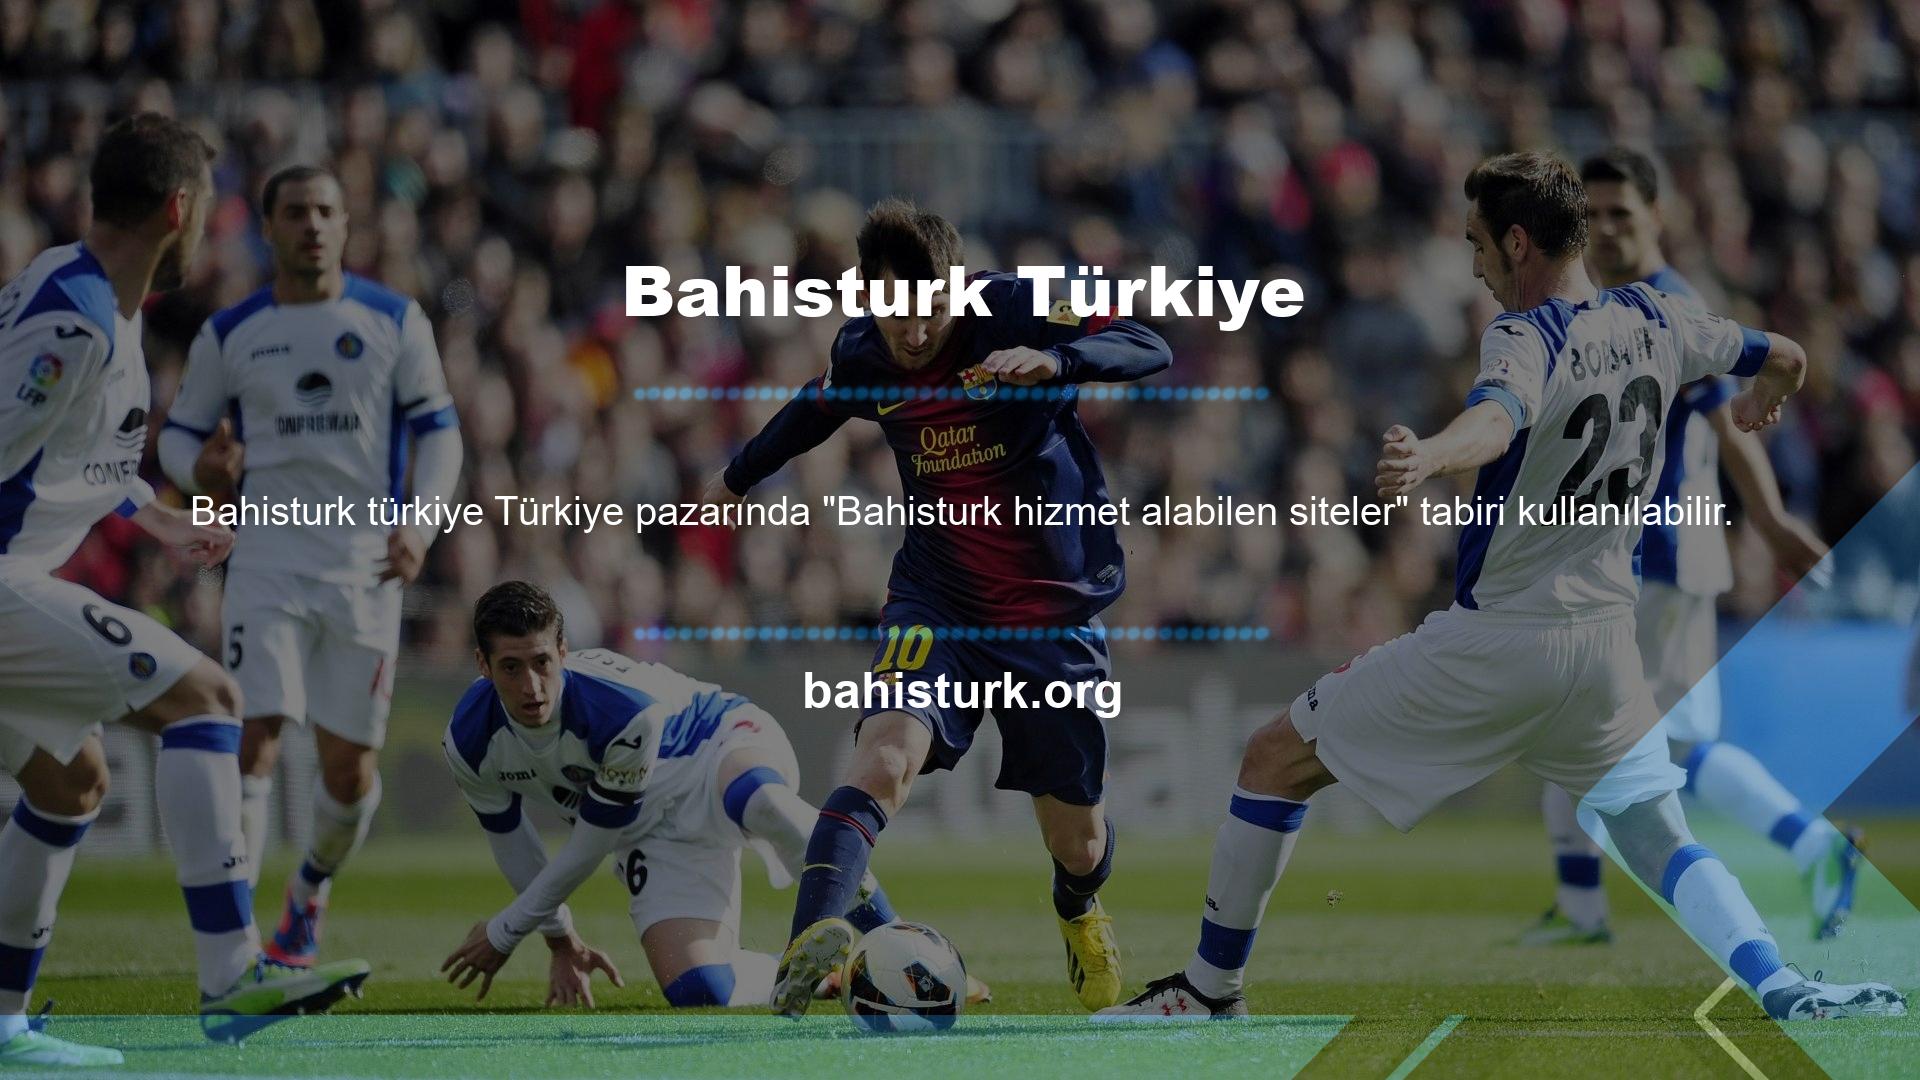 Bahisturk Türkiye'nin anlayışına göre yeni Bahisturk giriş adresi Bahisturk'tir